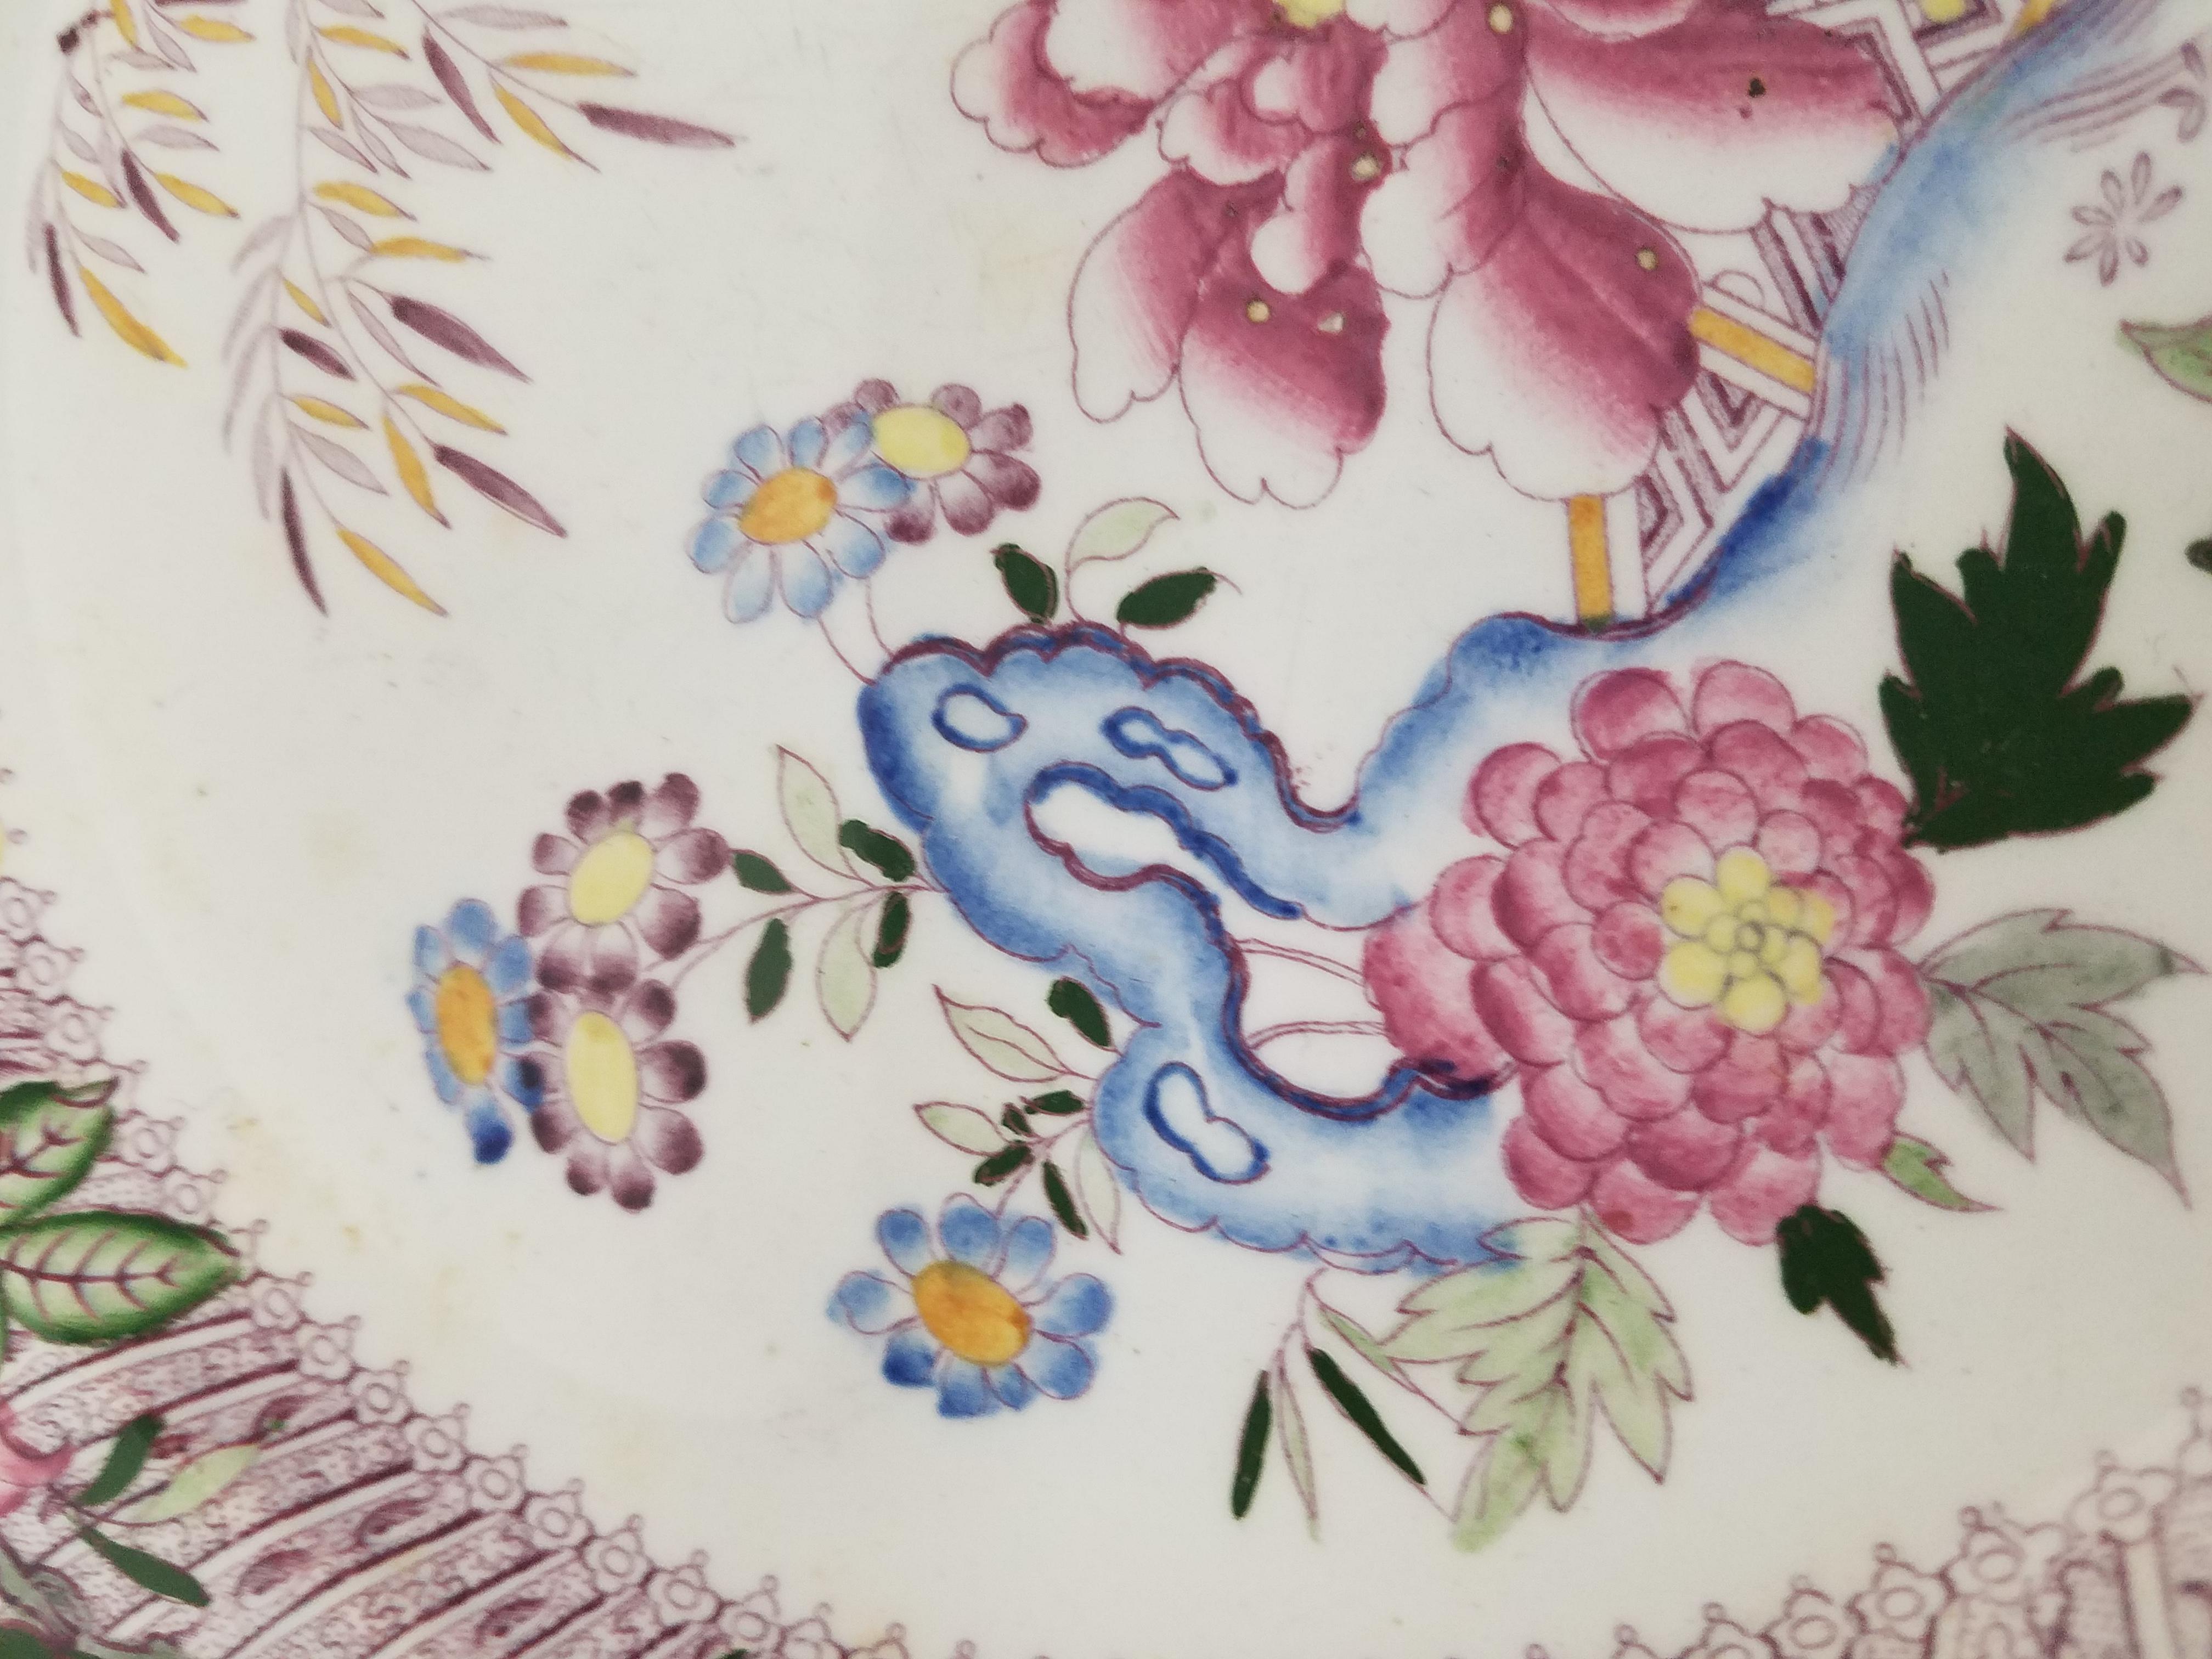 Merveilleuses assiettes à dîner anglaises du milieu du 19ème siècle avec un design de chinoiserie polychrome. La bordure en couches est décorée par transfert avec une superposition de motifs floraux asiatiques activés à la main. L'un d'eux présente